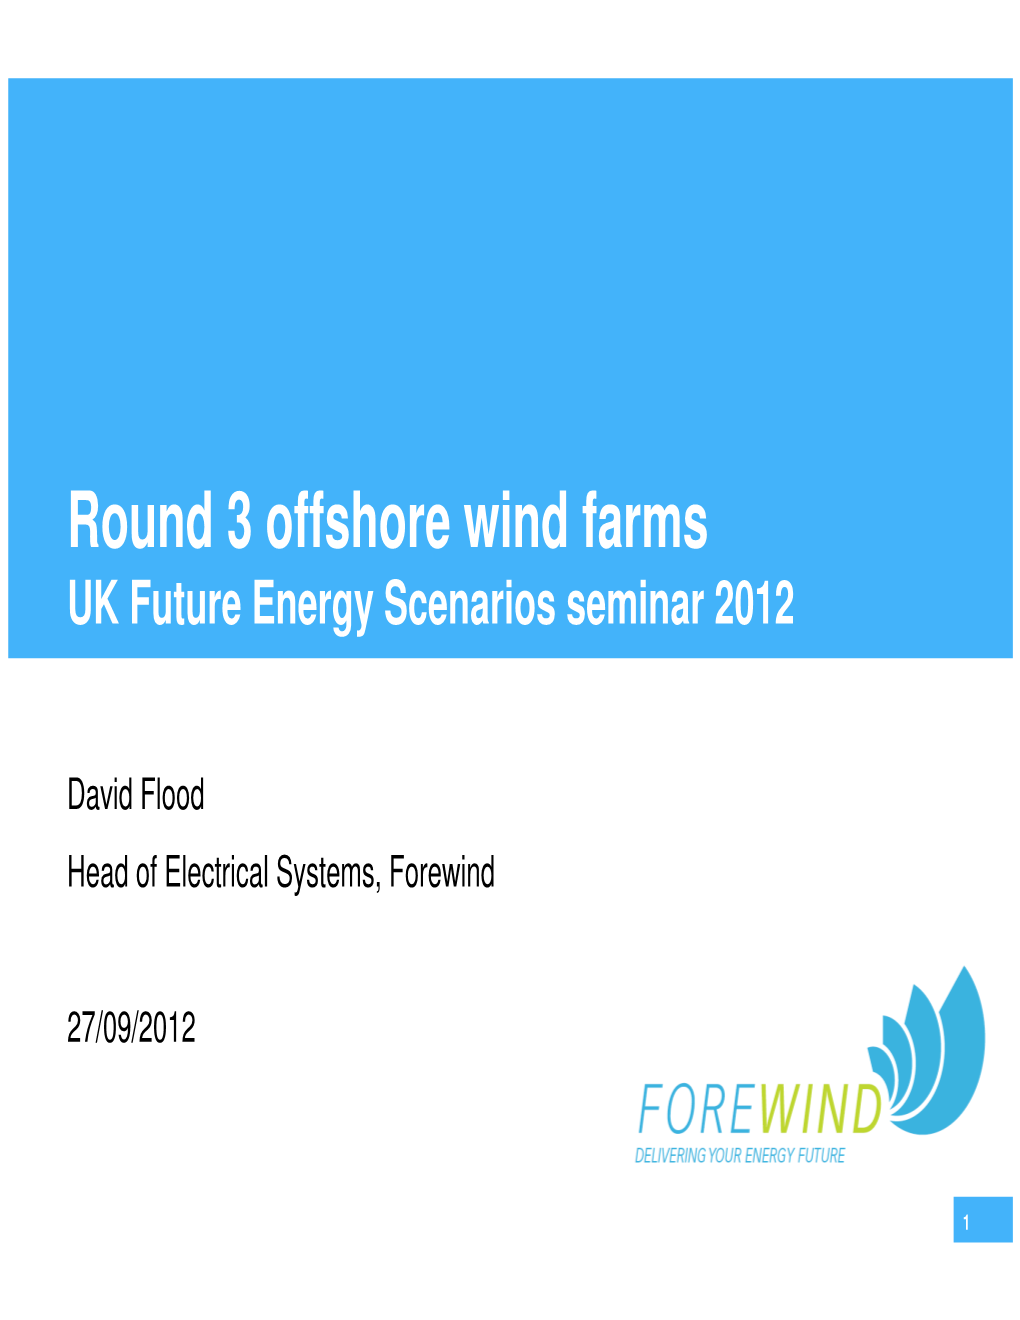 Round 3 Offshore Wind Farms UK Future Energy Scenarios Seminar 2012